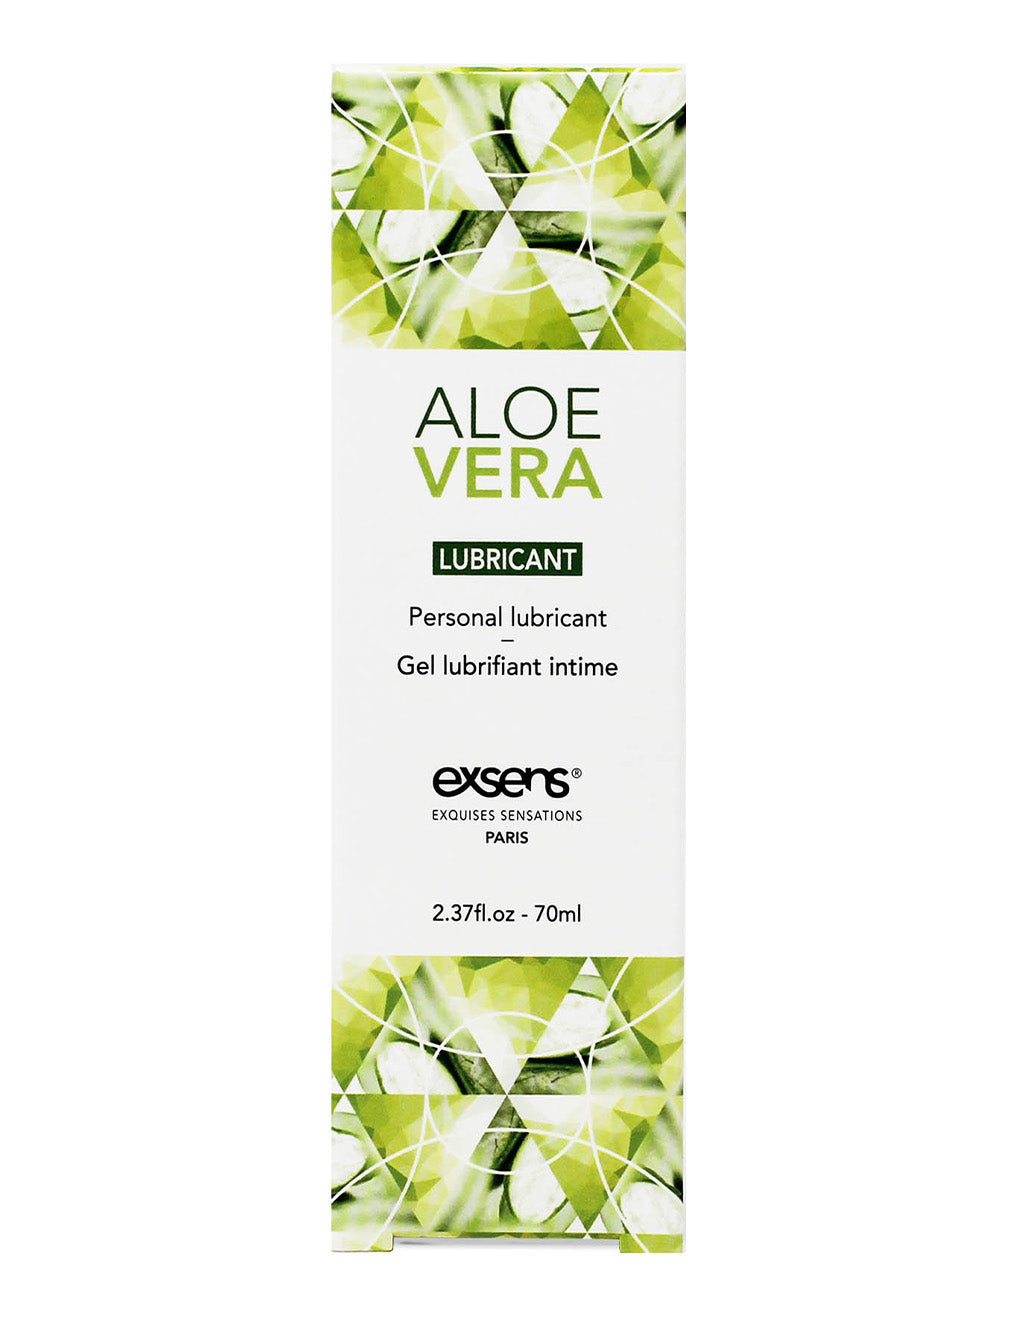 Exsens Aloe Vera Lubricant- Package